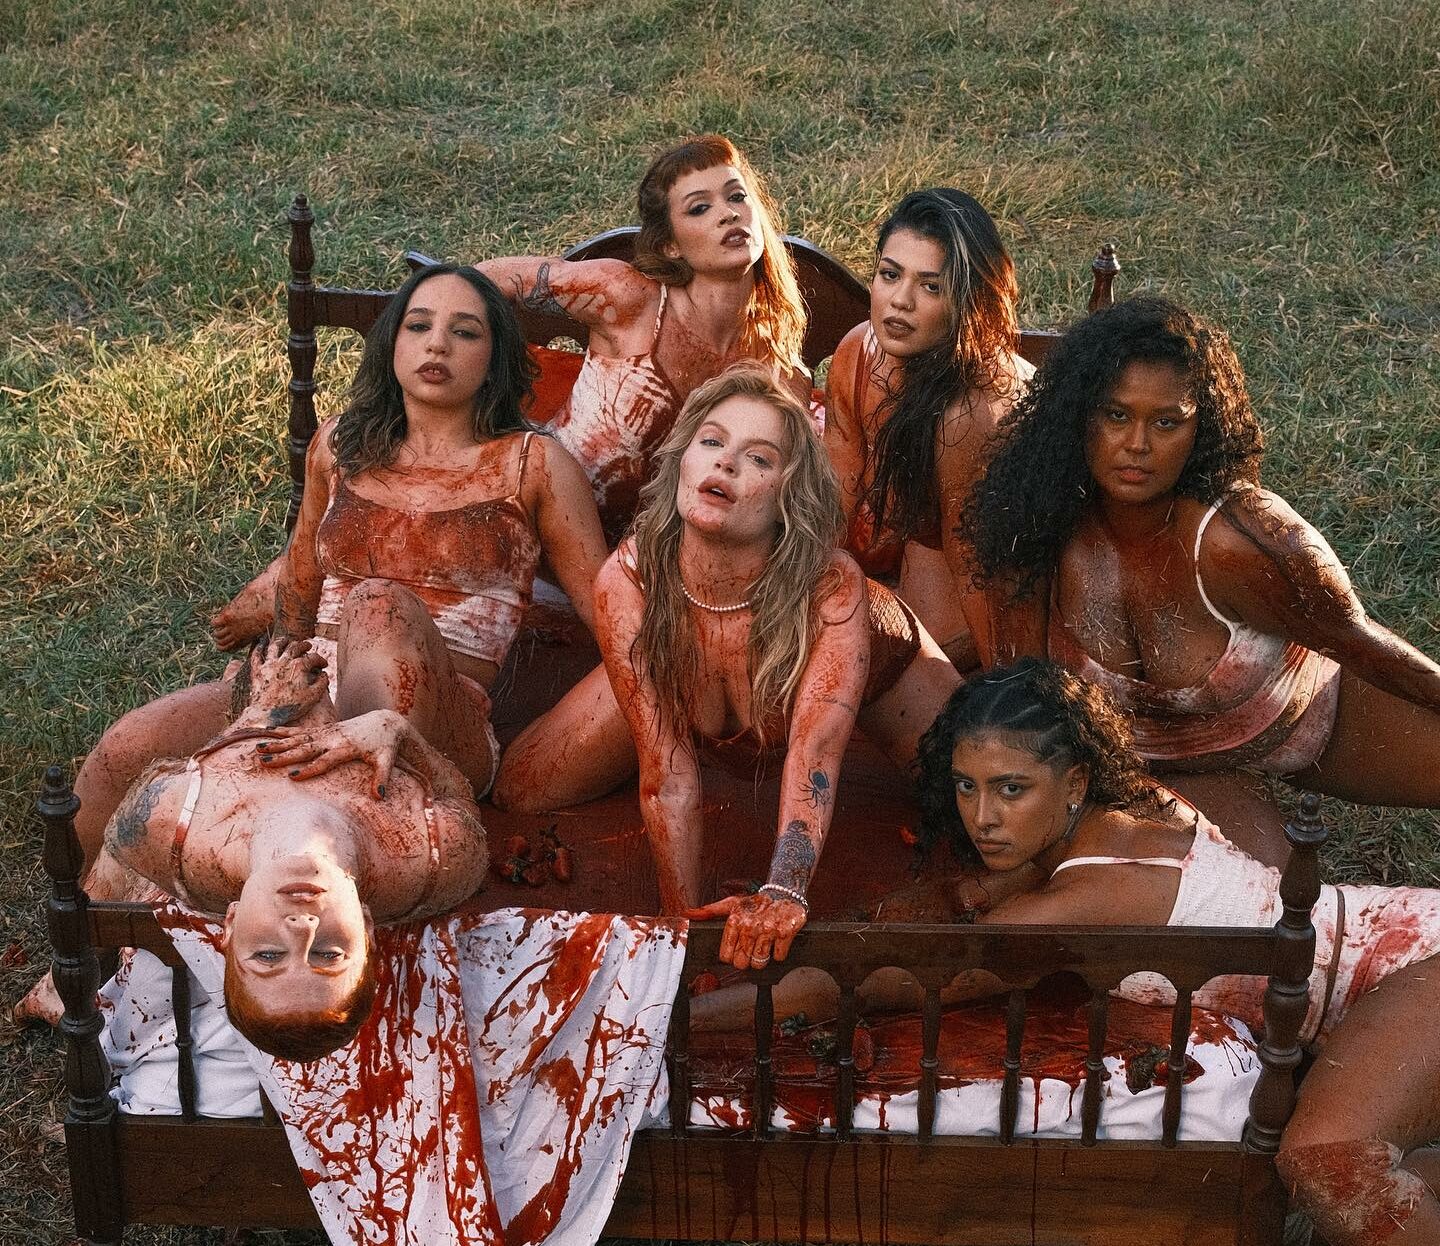 Luísa no clipe "Campo de Morango" em cima de uma cama coberta de tinta vermelha com dançarinas ao seu lado